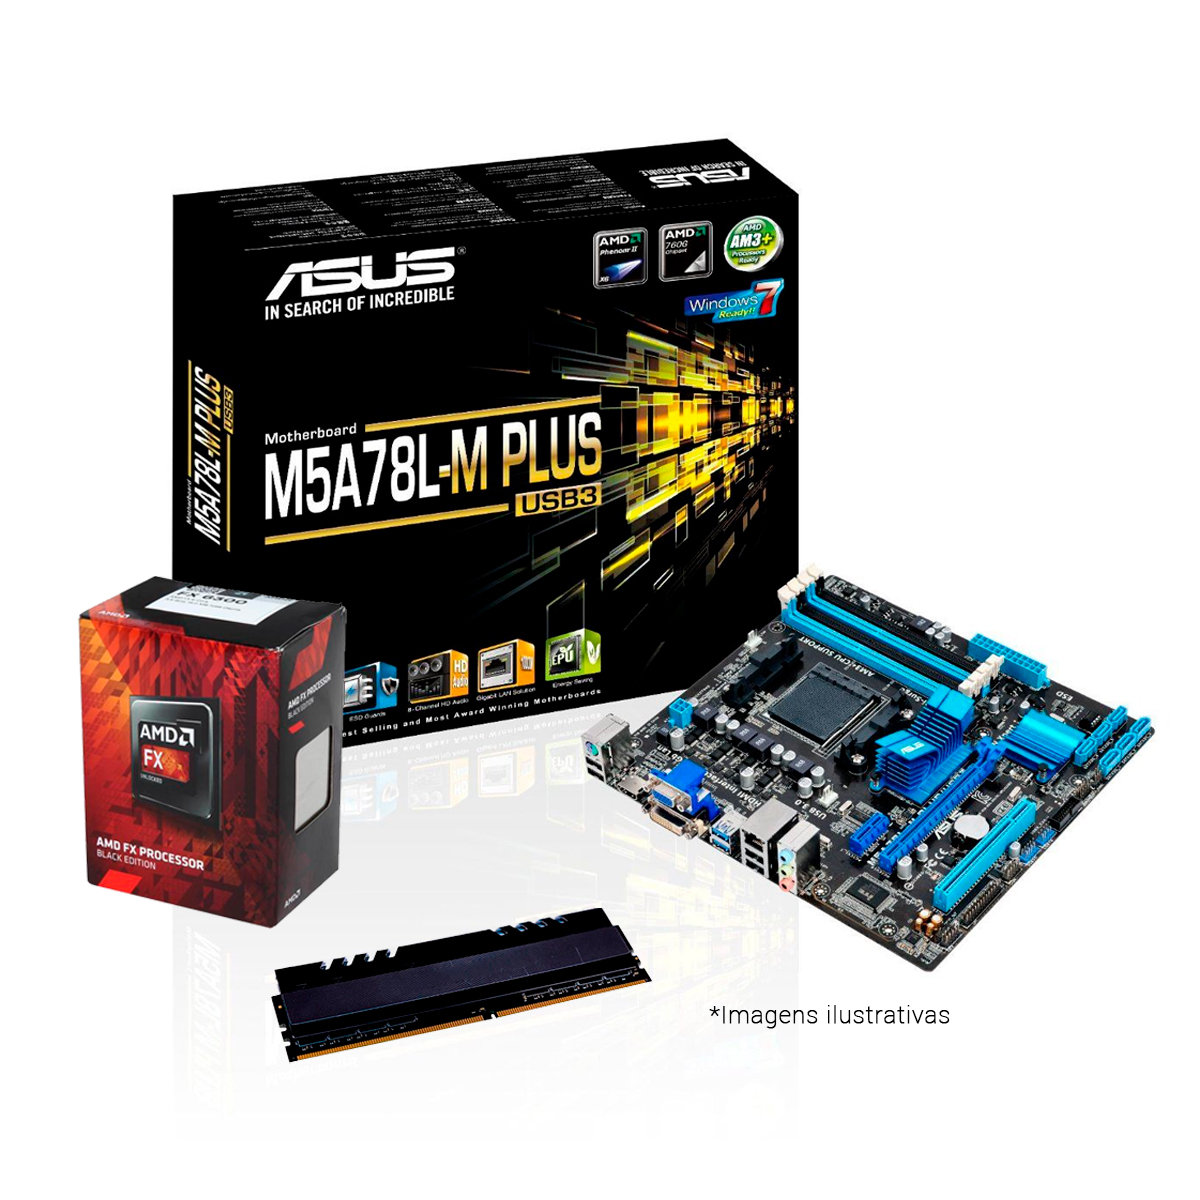 Kit Upgrade AMD FX-6300 + Asus M5A78L-M PLUS/USB3 + Memória 4GB DDR3